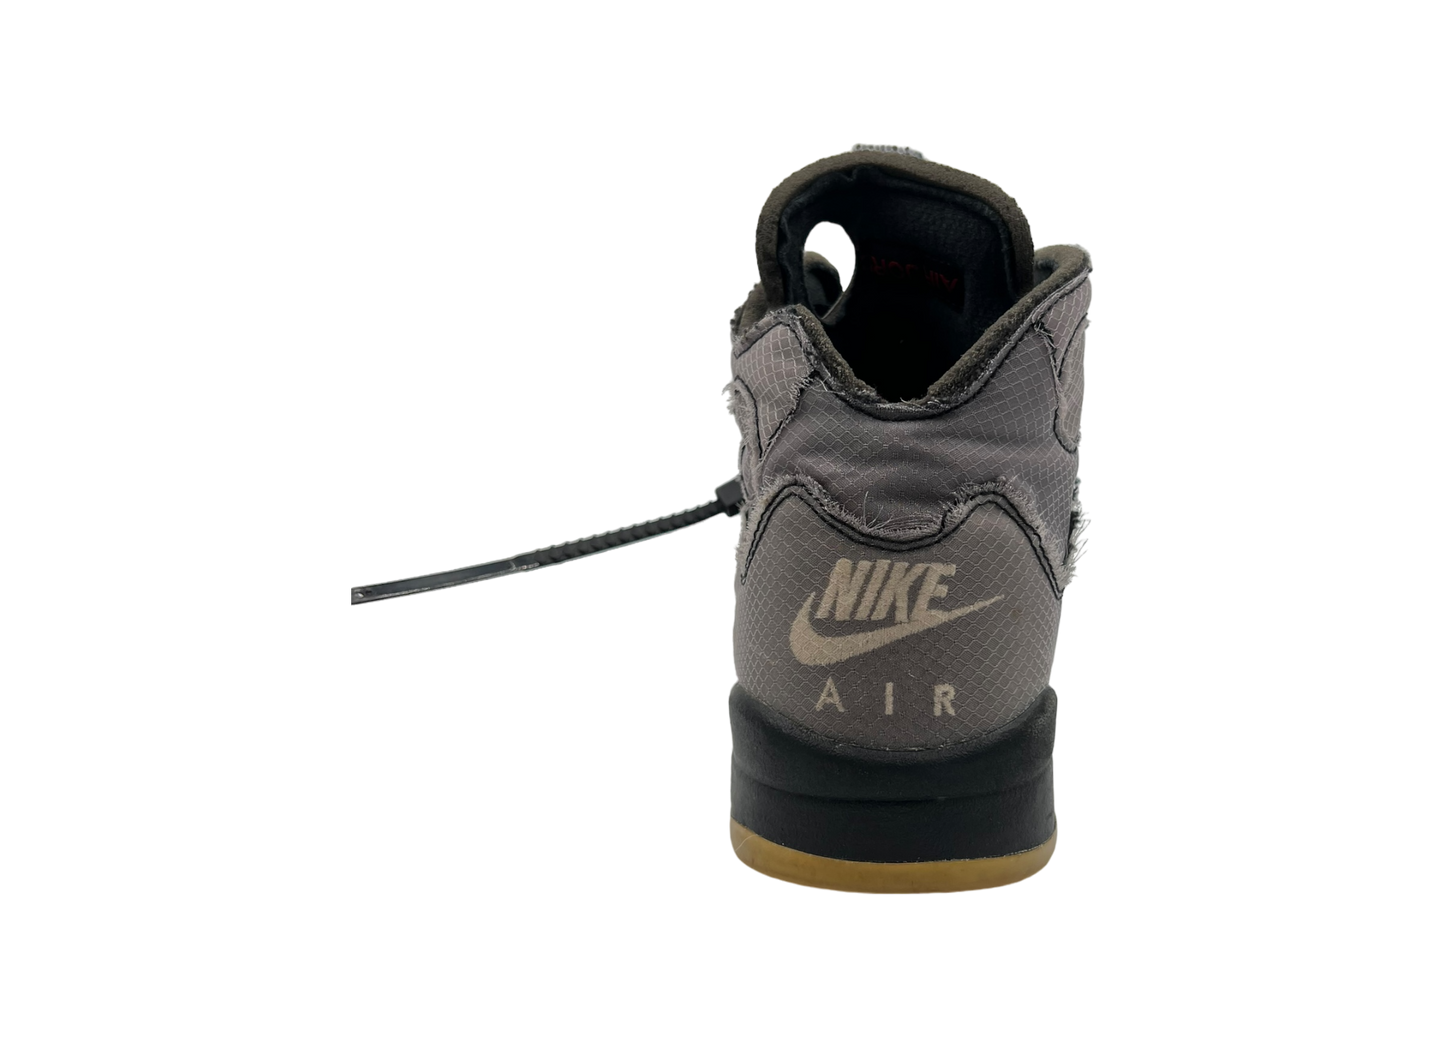 Nike Jordan 5 Off-White Black COND 8.5/10 (OG ALL)